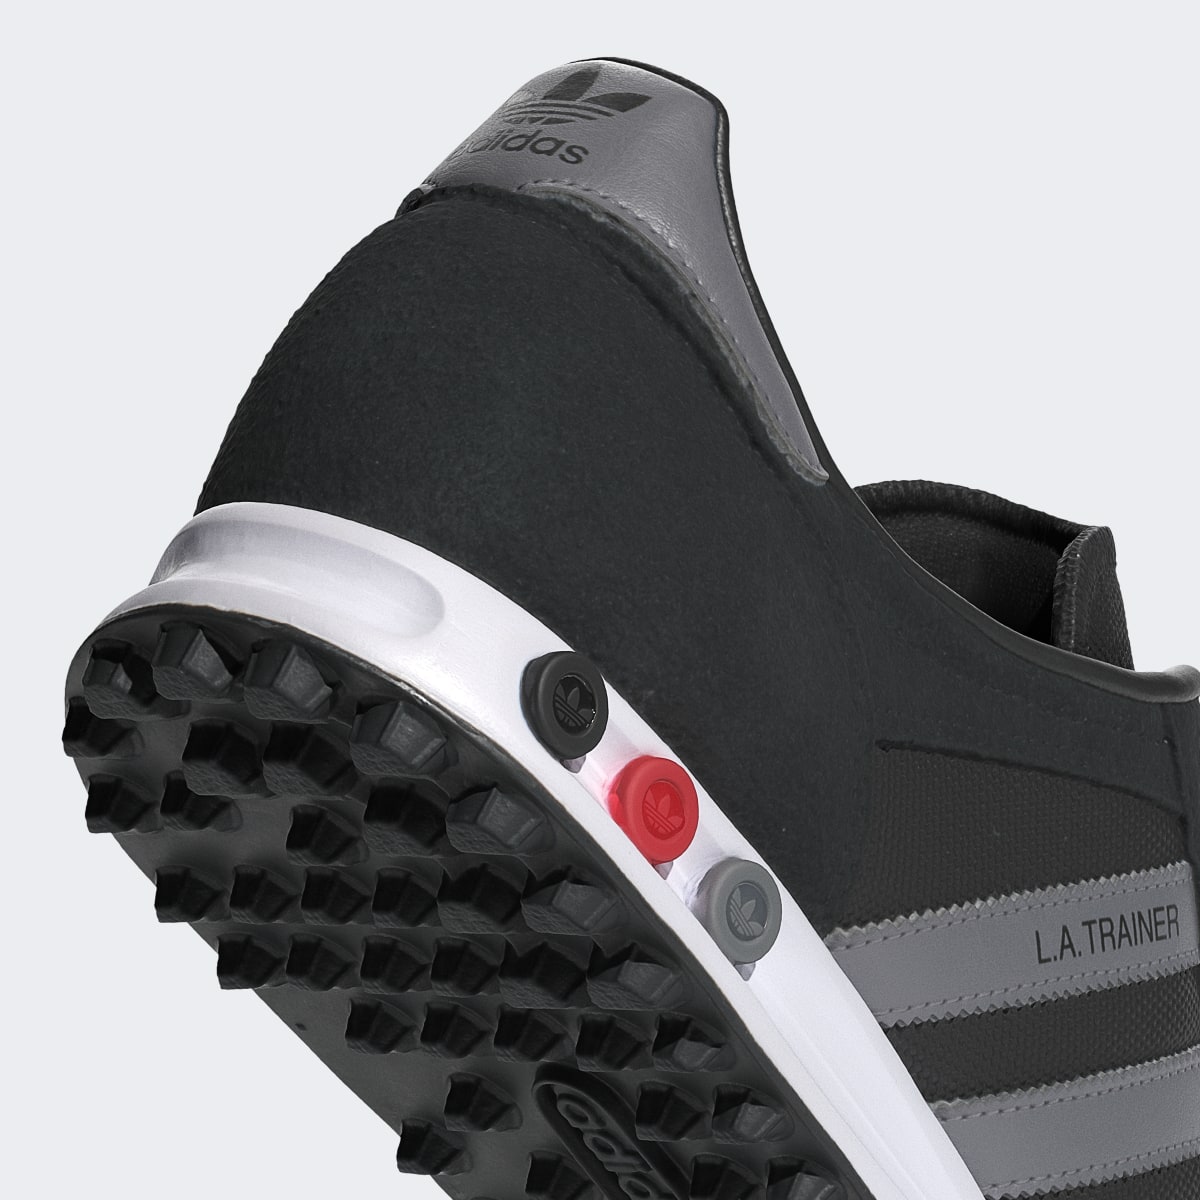 Adidas LA Trainer Shoes. 10